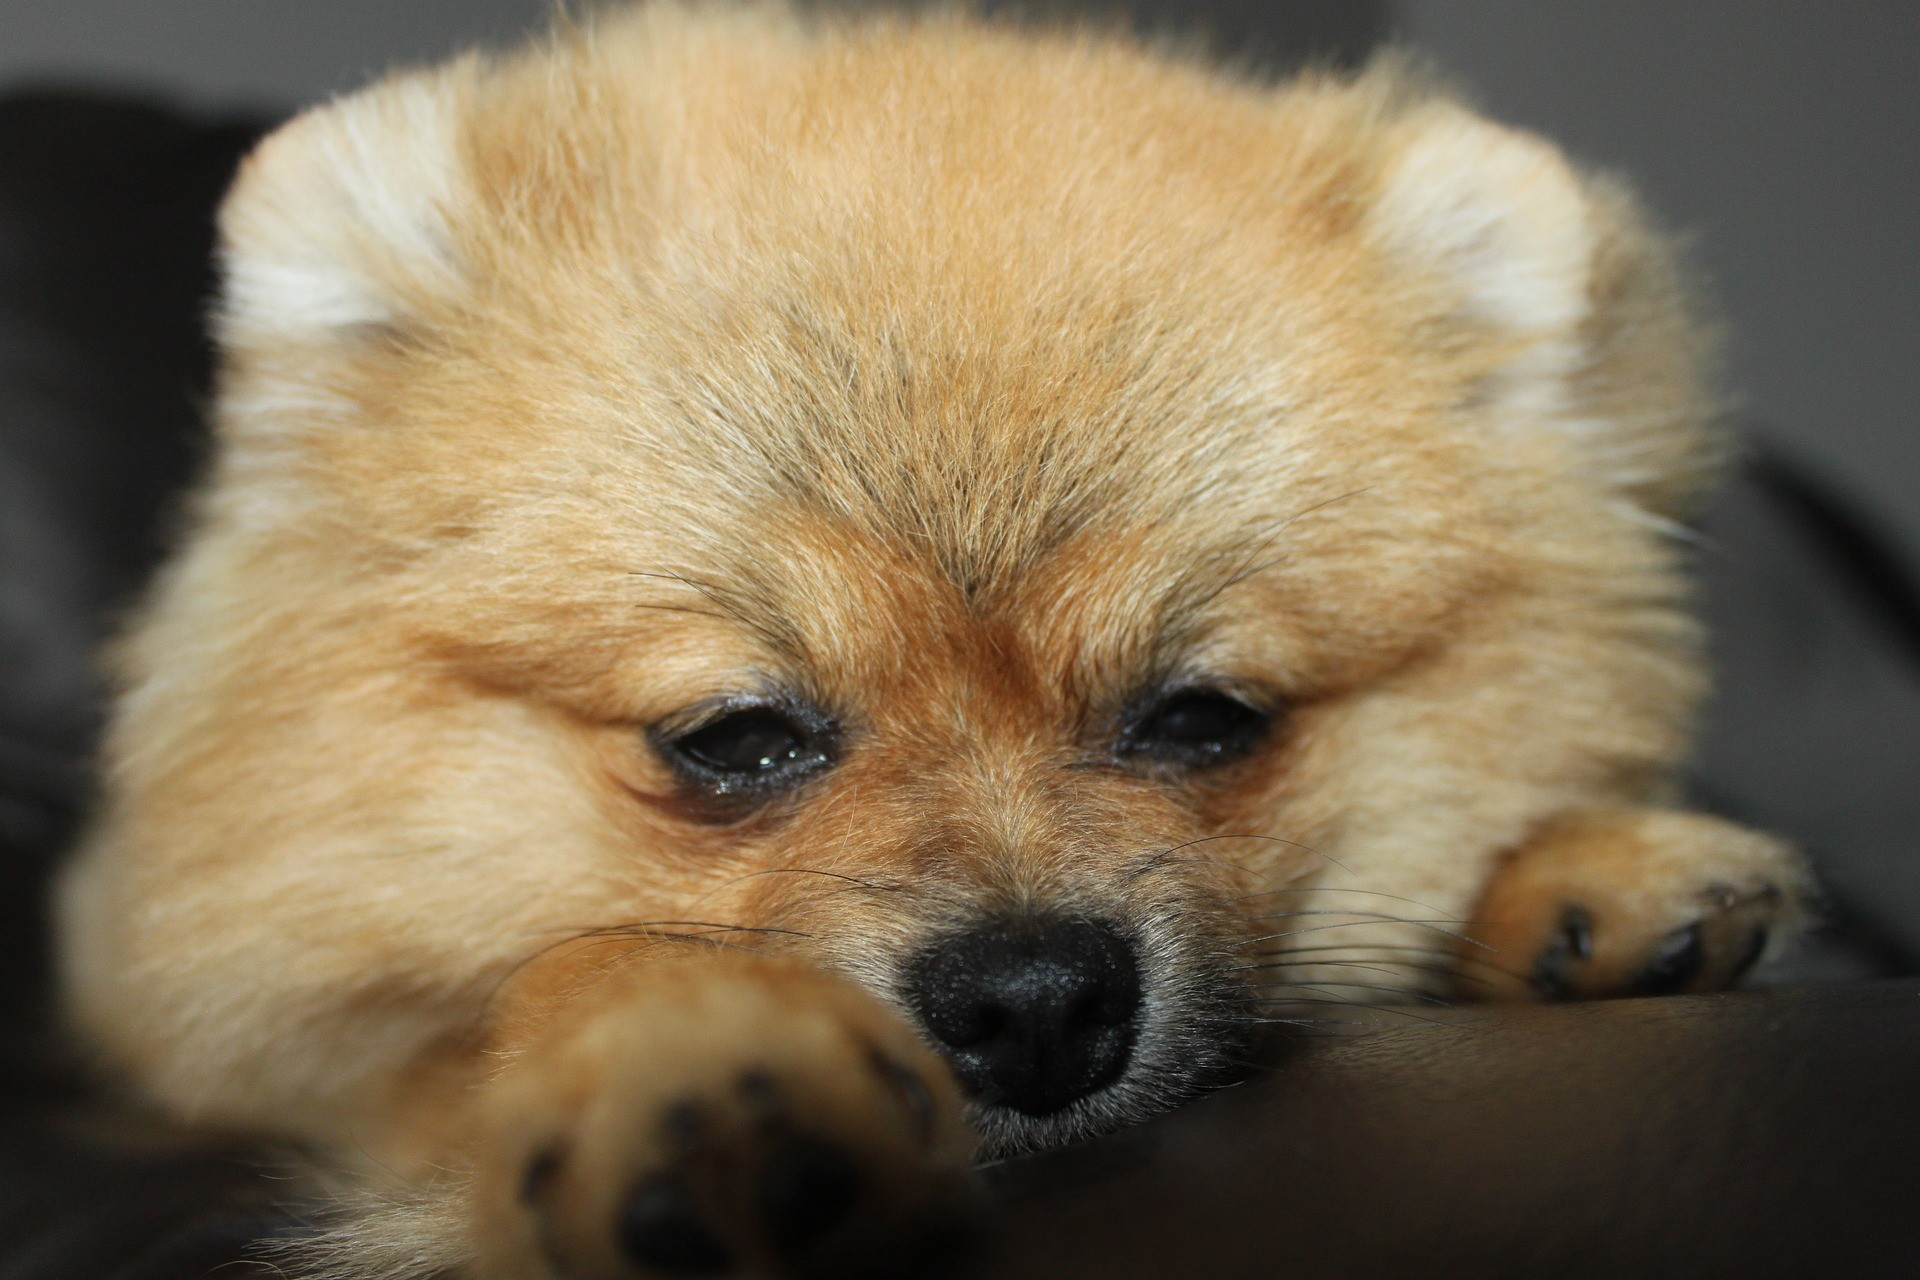 Nos EUA, cães vendidos em pet shop estariam transmitindo bactéria perigosa aos humanos (Foto: Pixabay)